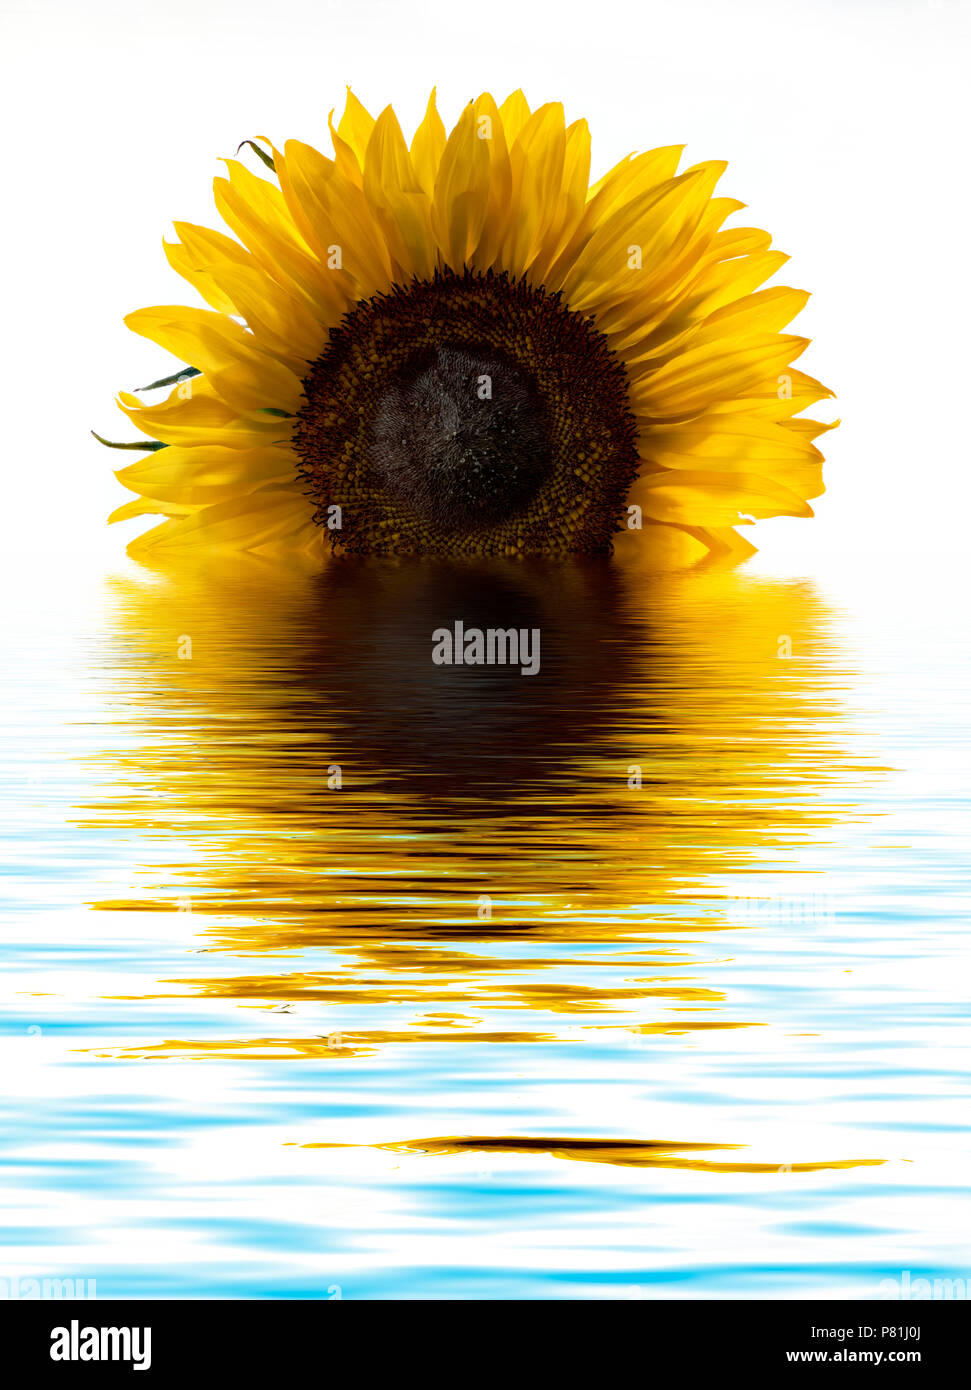 Digital Foto einer Sonnenblume in einem Pool von Wasser, so dass es aussieht wie eine aufgehende Sonne reflektieren manipuliert Stockfoto